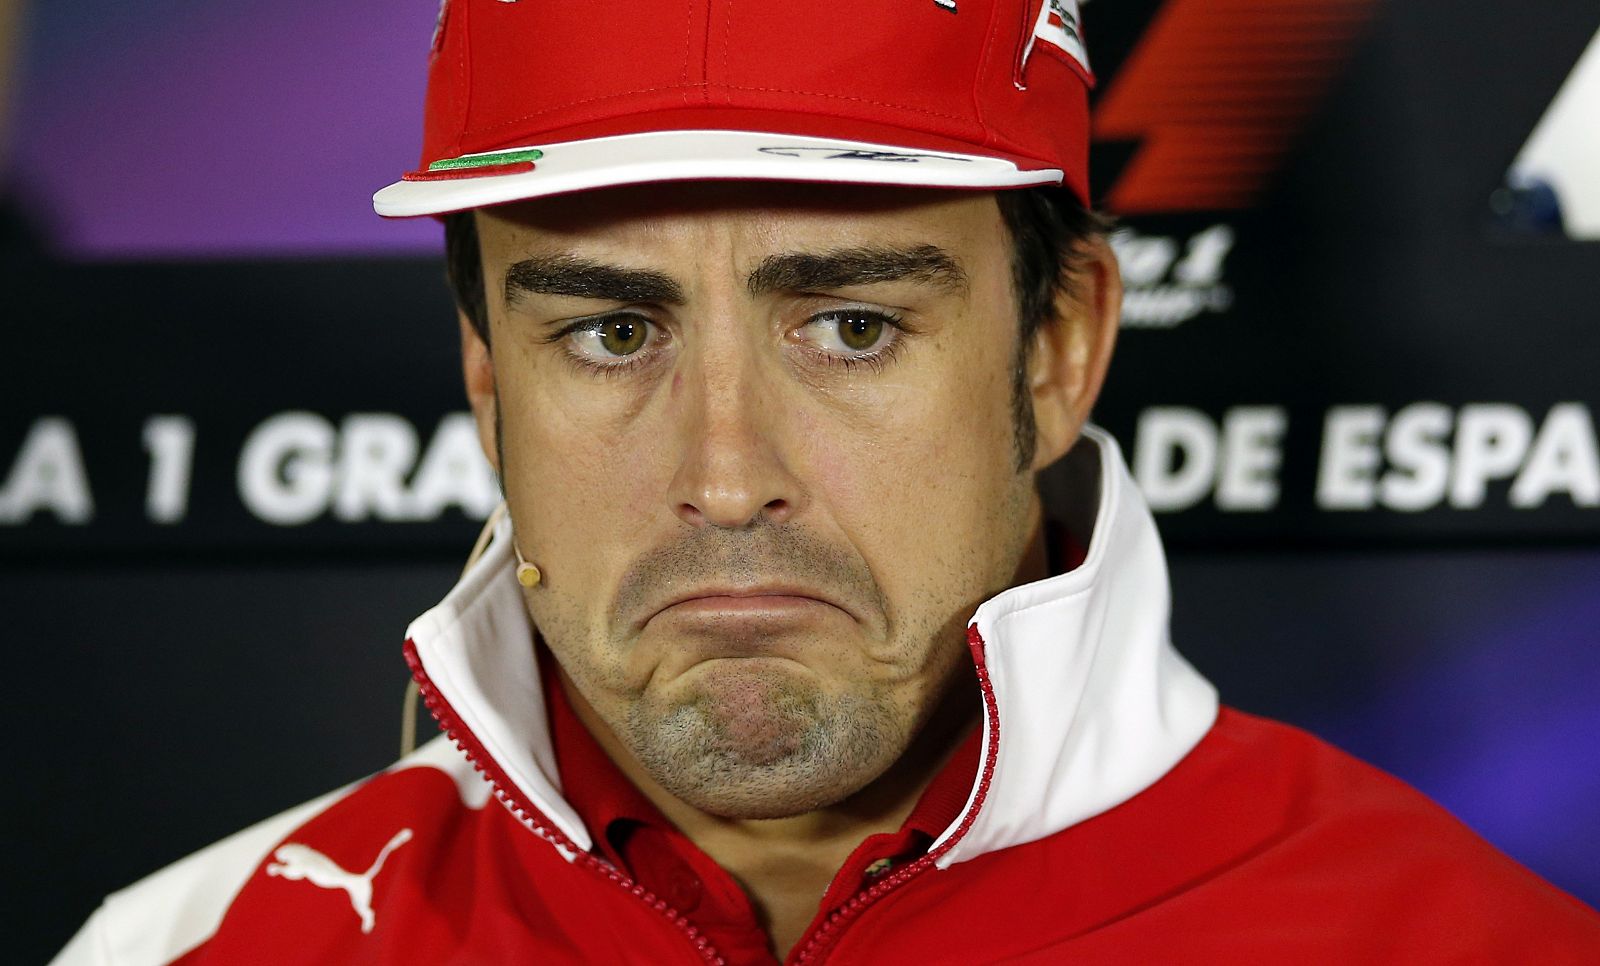 Fernando Alonso, en la rueda de prensa pevia